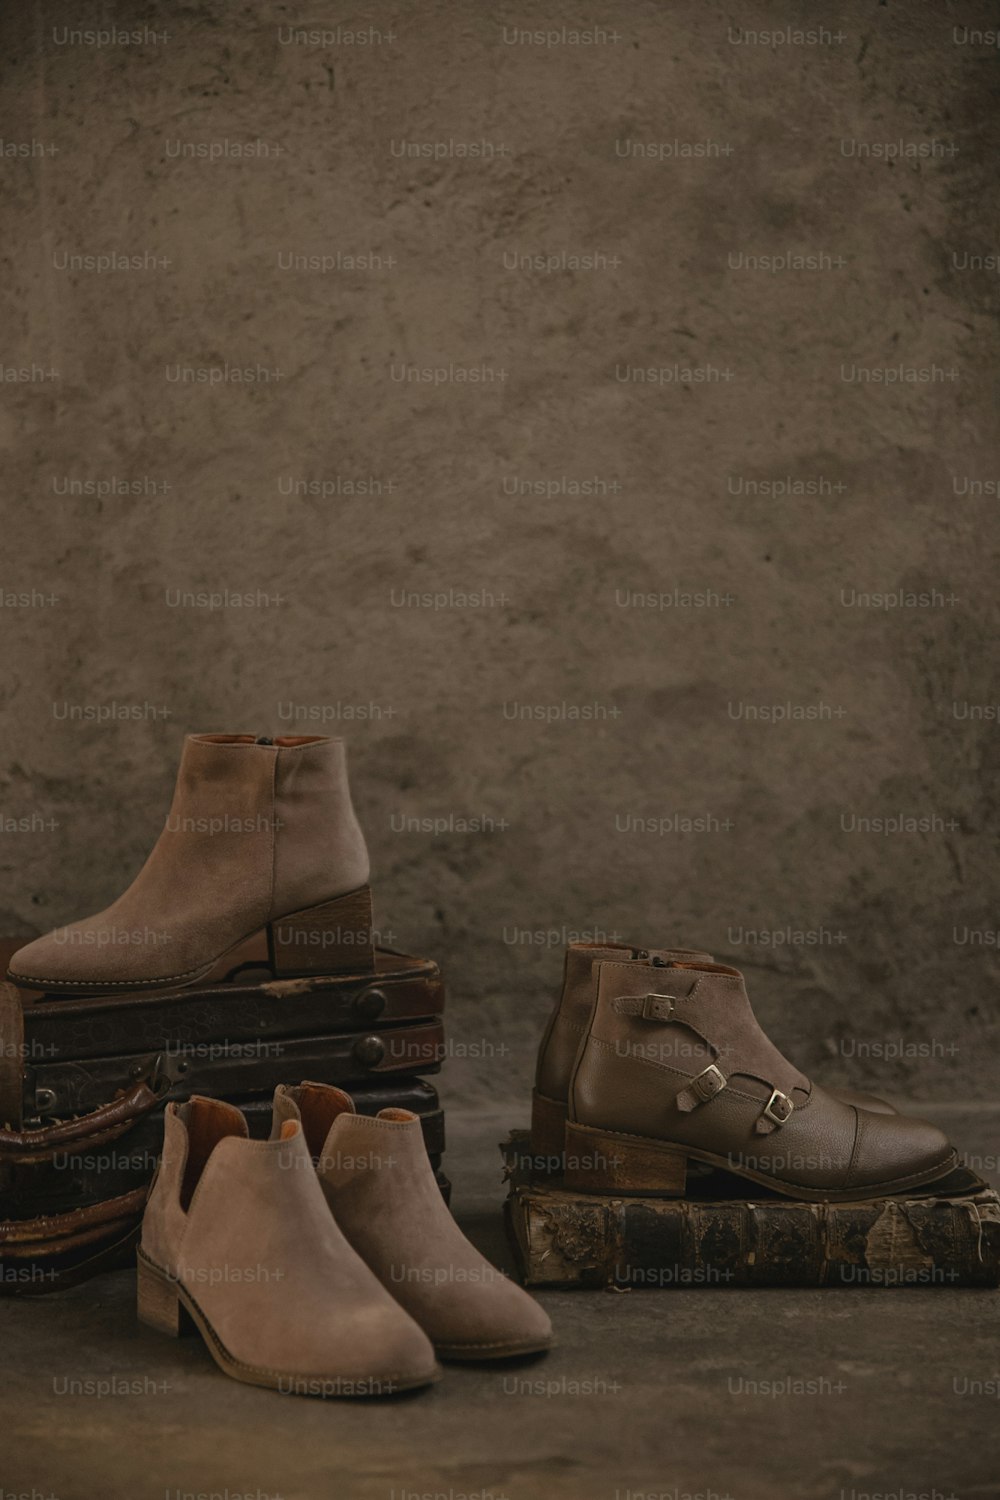 Eine Gruppe Schuhe sitzt auf einem Gepäckstapel